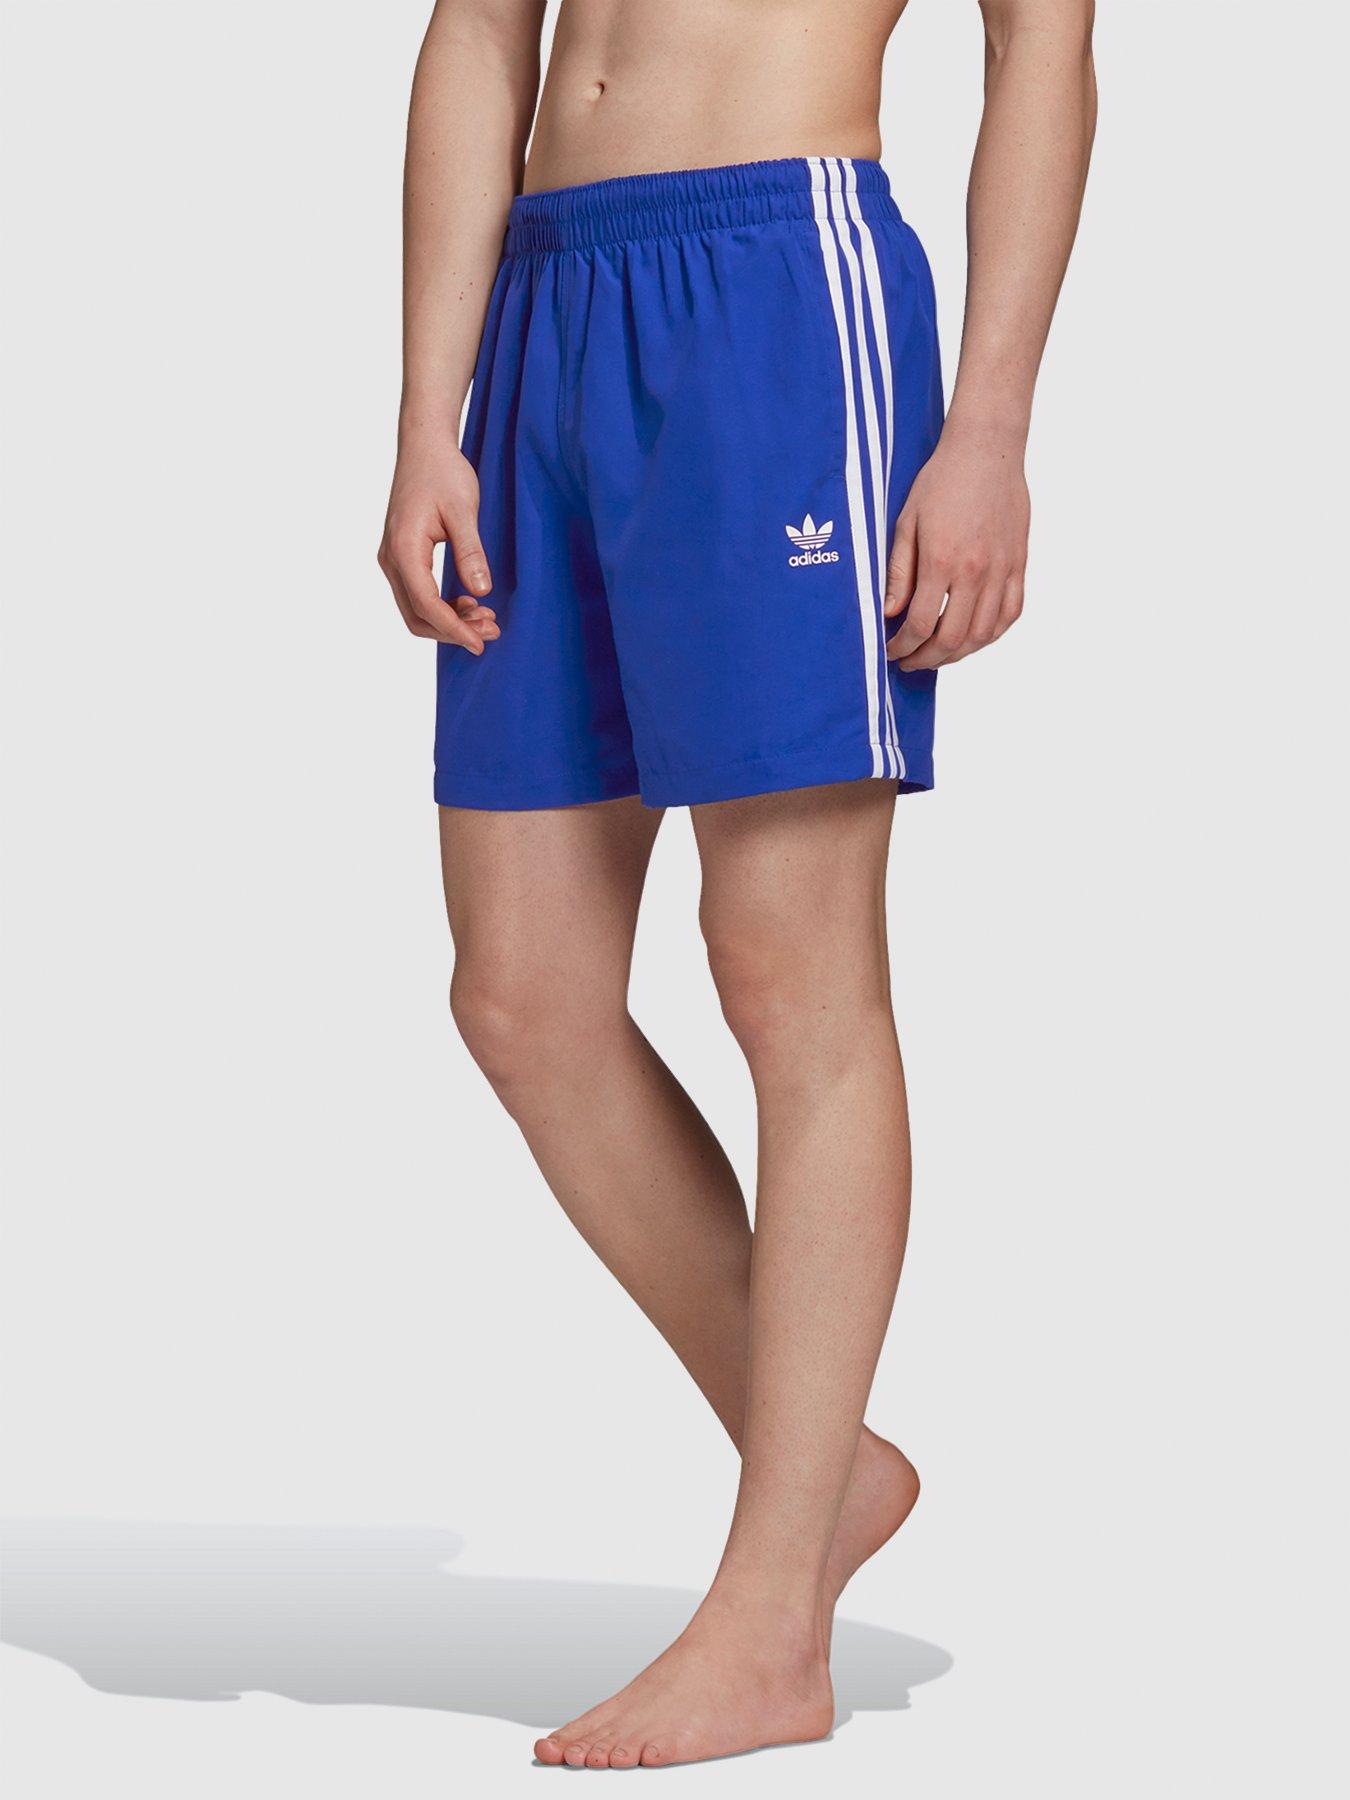 adidas blue shorts mens